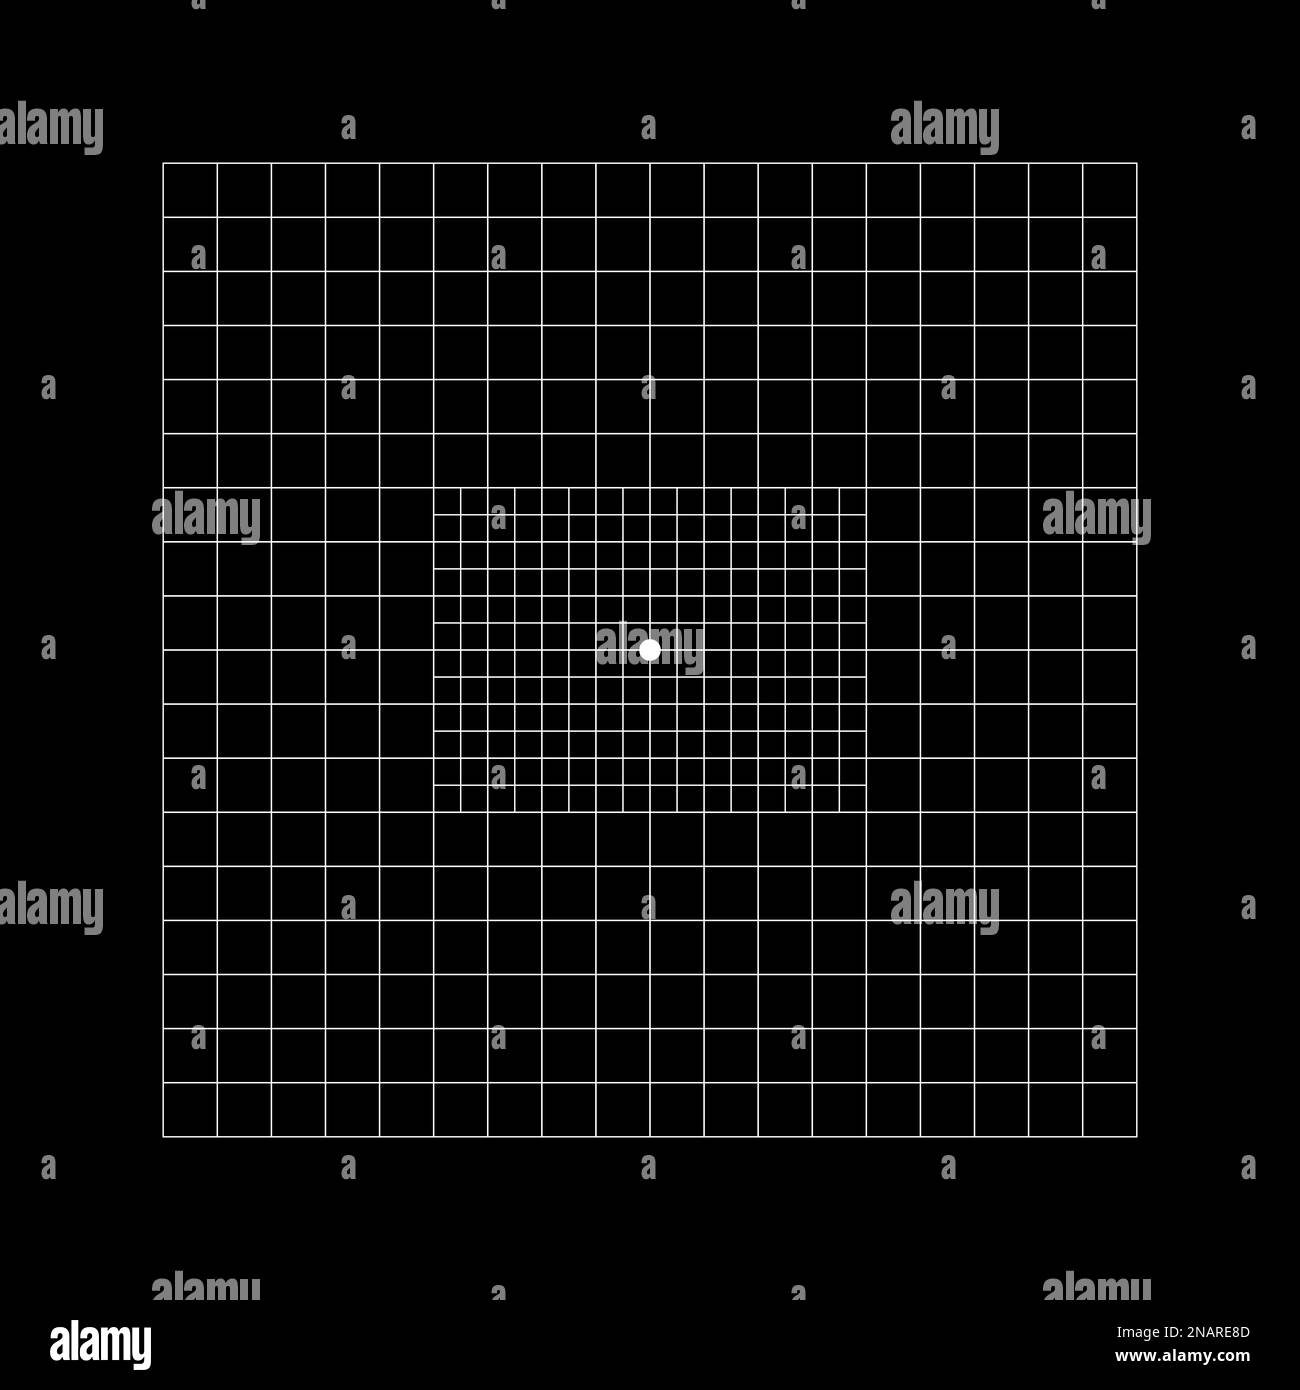 Type de grille Amsler avec carrés centraux divisés en carrés de 0,5 degrés. Test graphique pour détecter les défauts de vision. Outil de diagnostic ophtalmologique Illustration de Vecteur